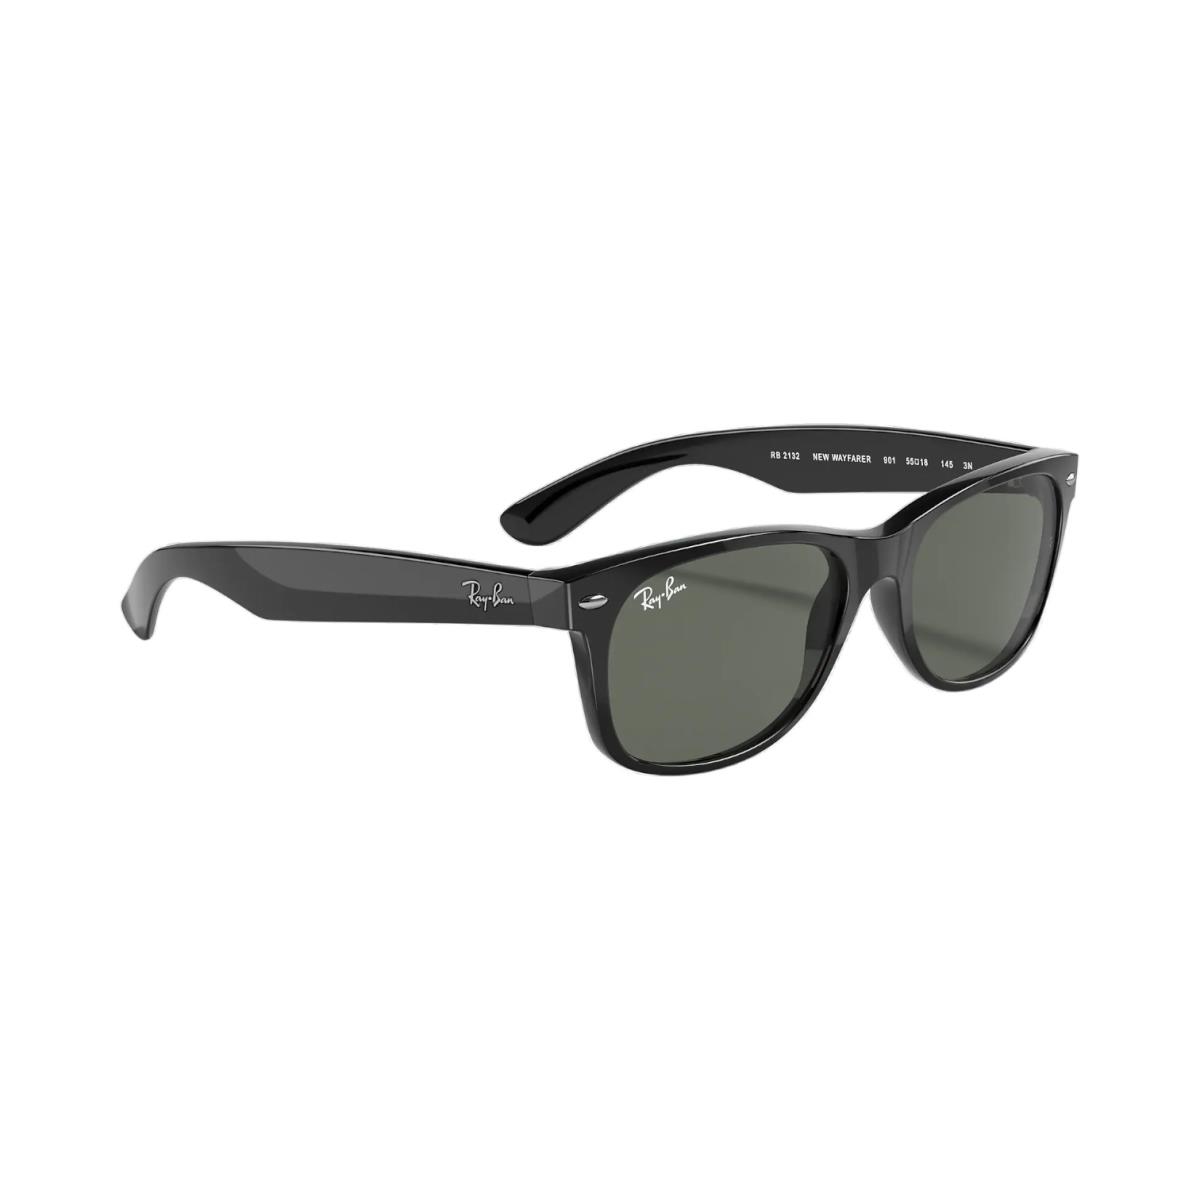 Ray-ban RB2132 Wayfarer Sunglasses - Black Frame G-15 Green Lenses